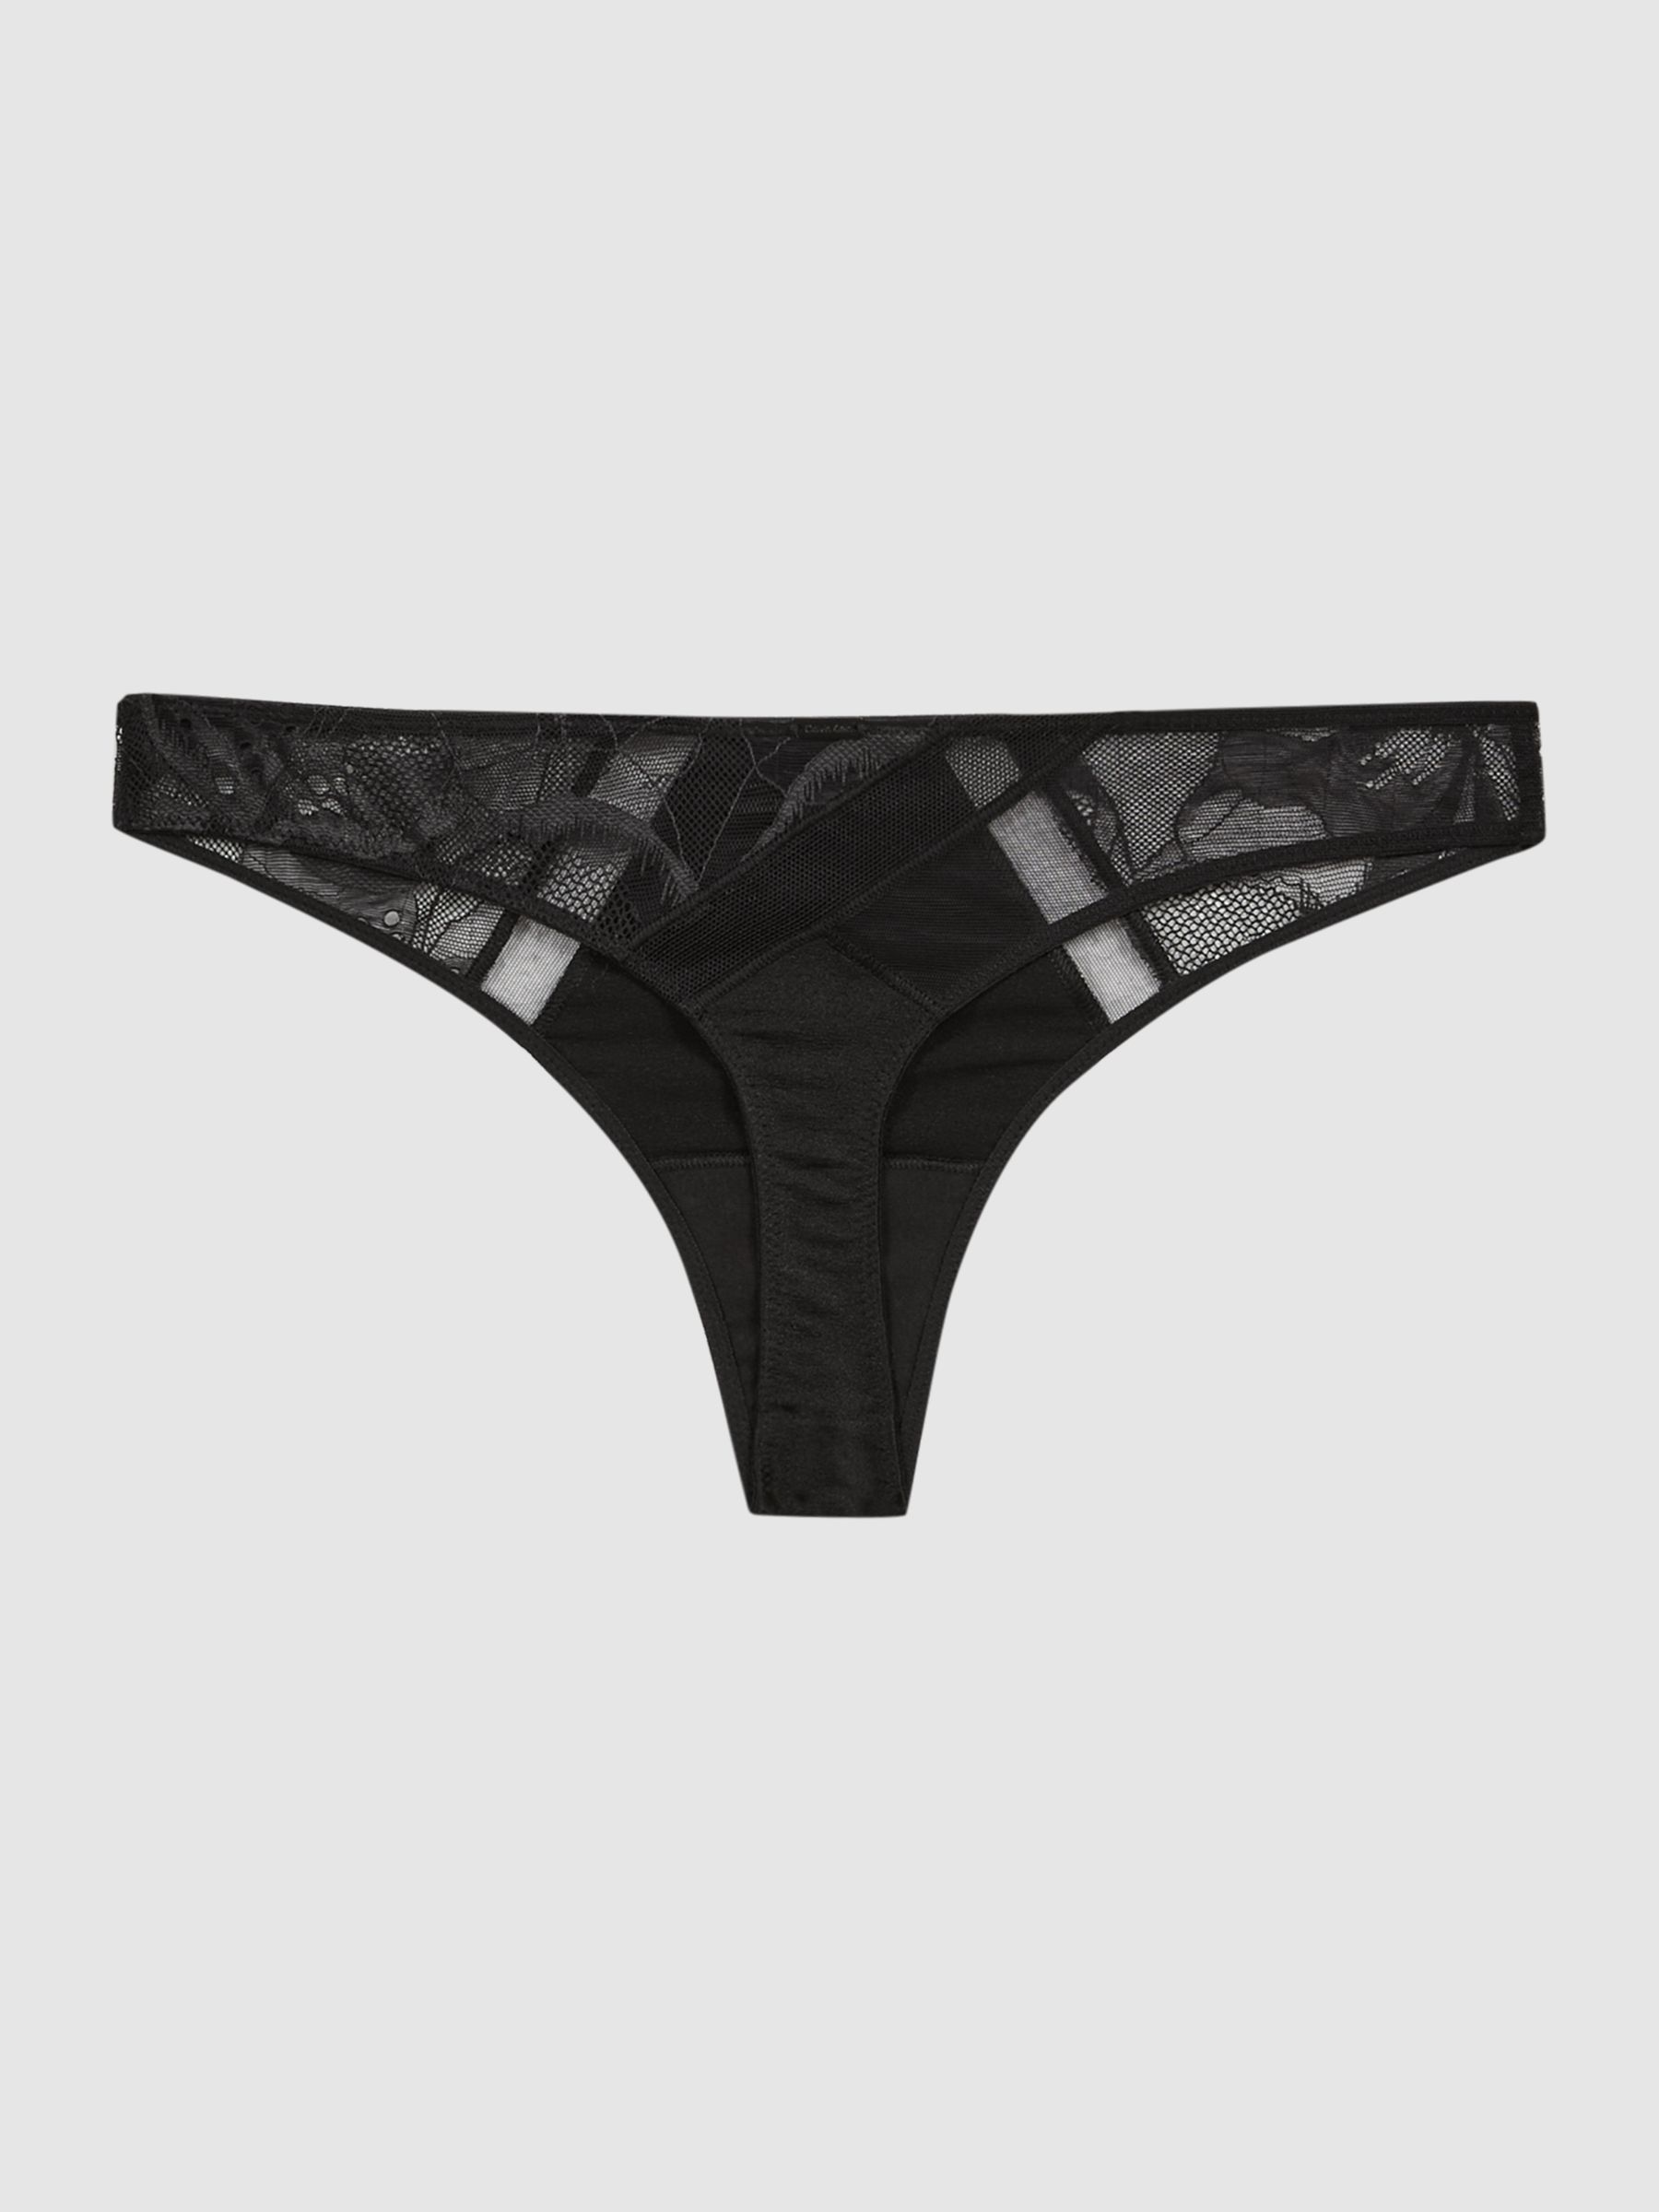 Reiss Calvin Klein Underwear Satin Lace Thong - REISS